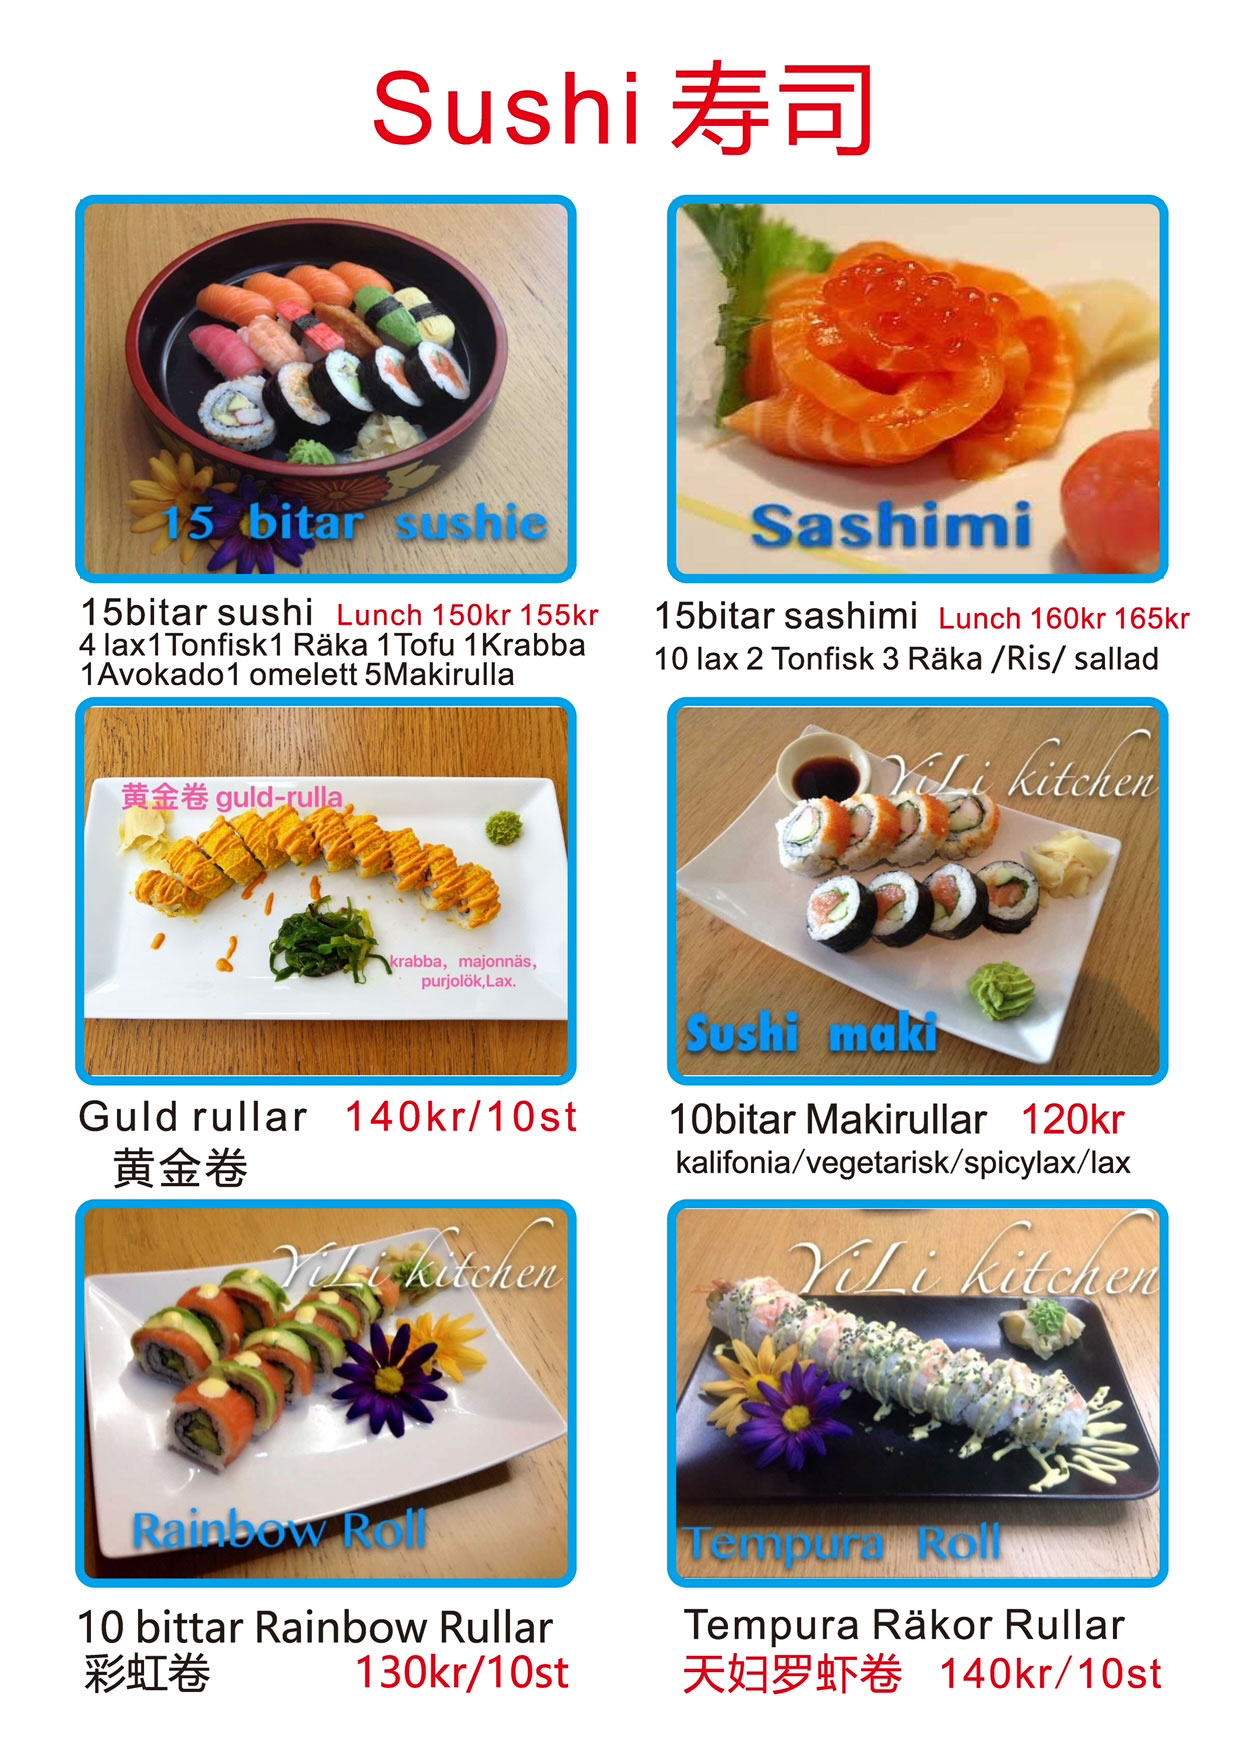 Sushi YiLi Kitchen